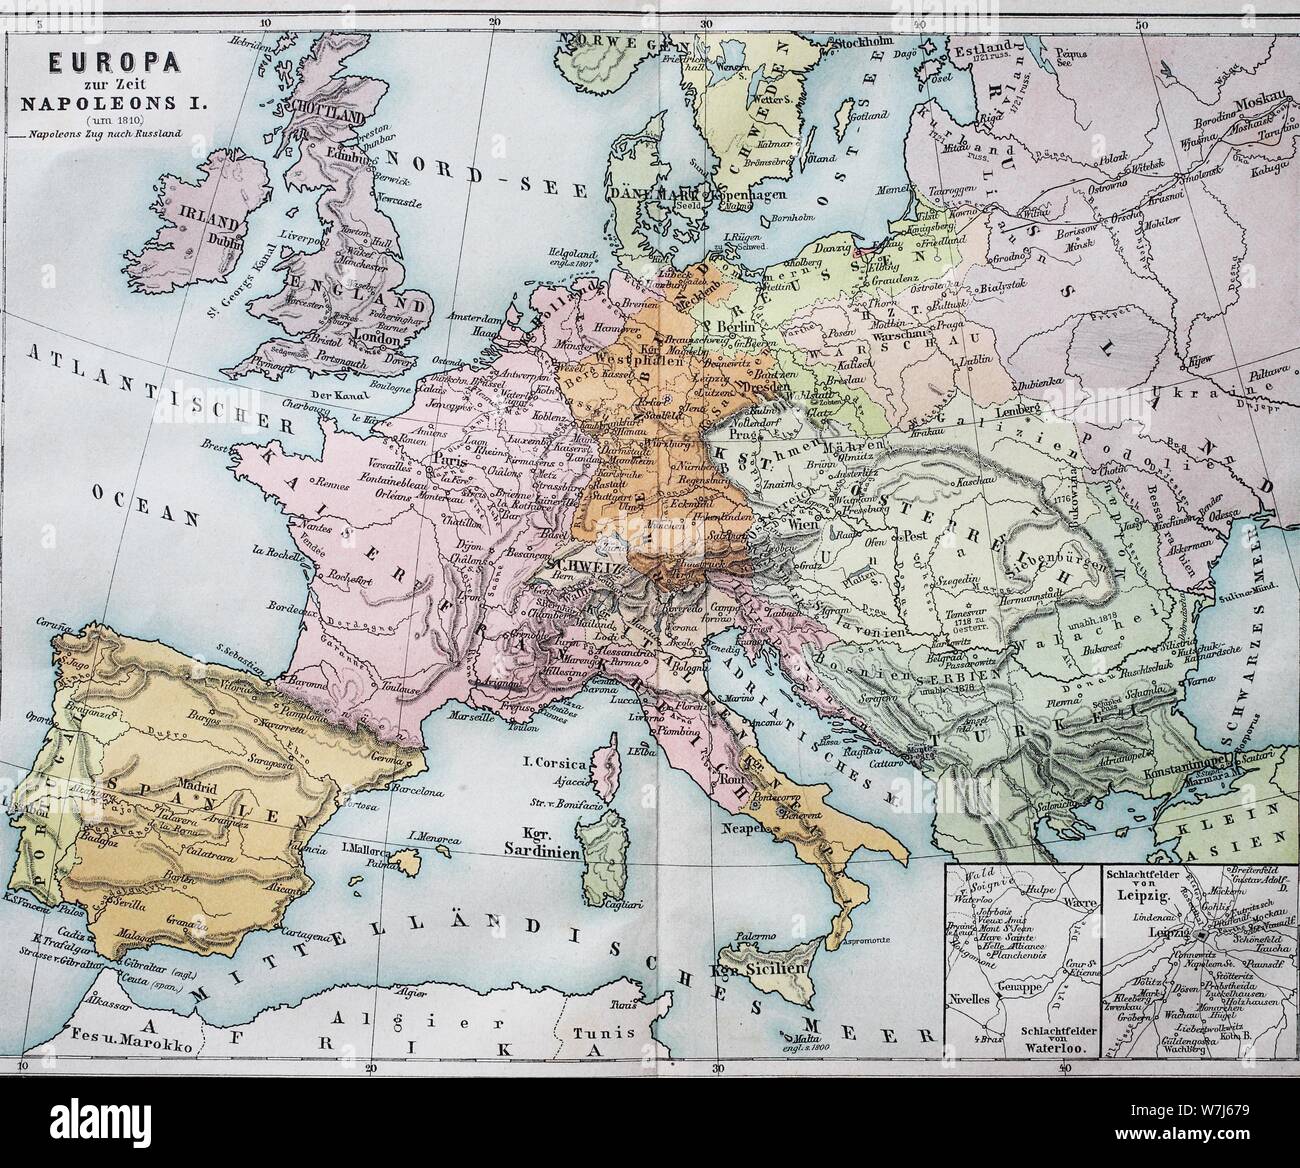 Carte historique de l'Europe à l'époque de Napoléon Ier, 1820, illustration historique, Italie Banque D'Images